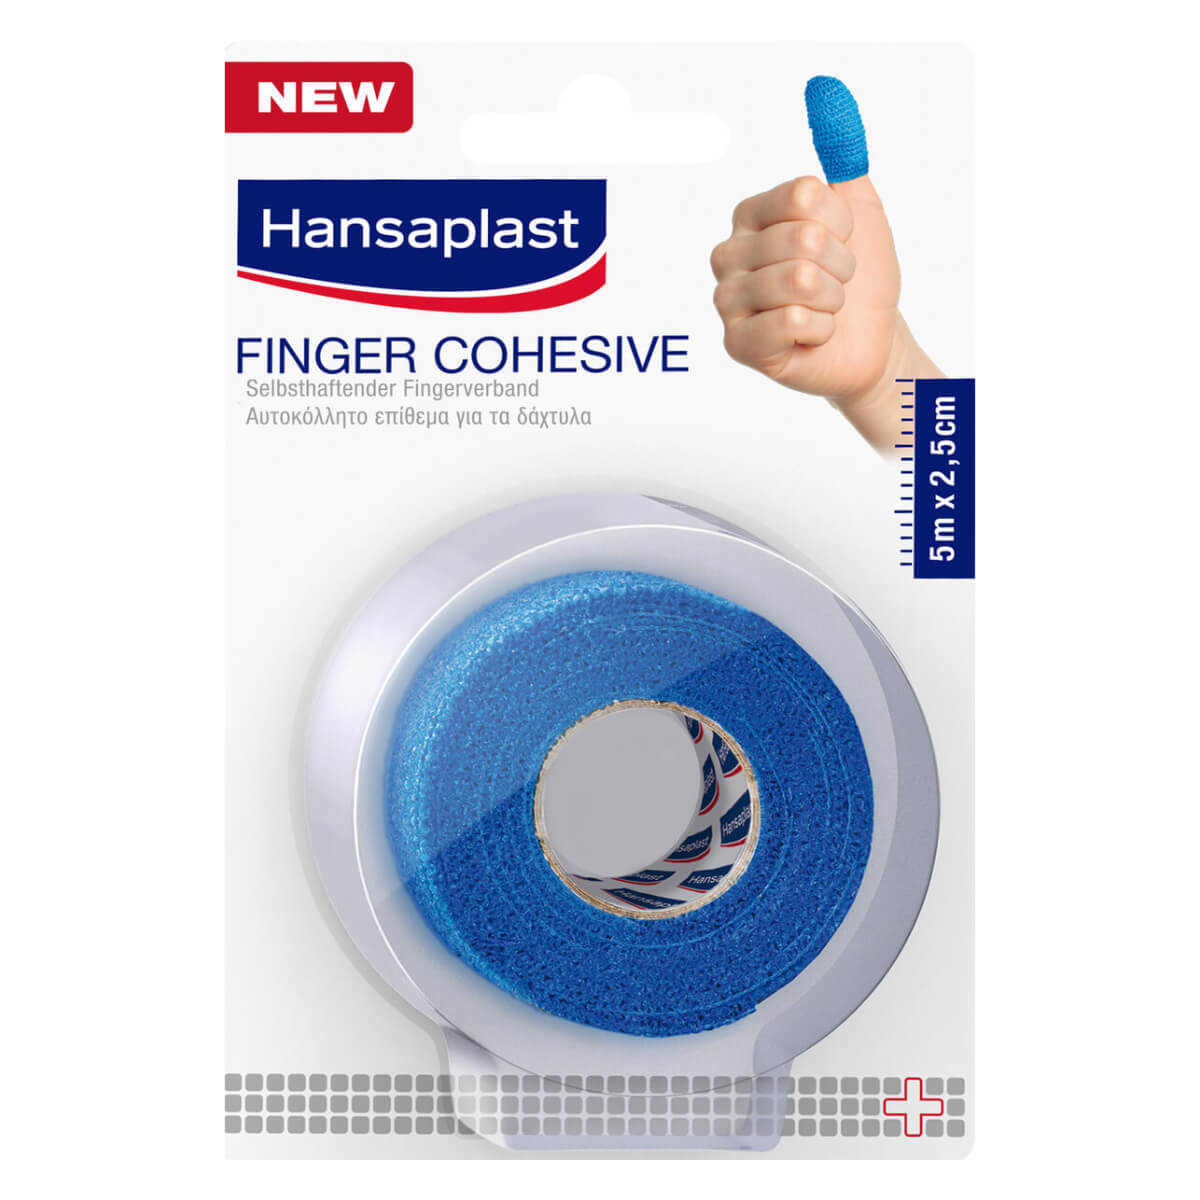 Hansaplast Self adhesive finger bandage